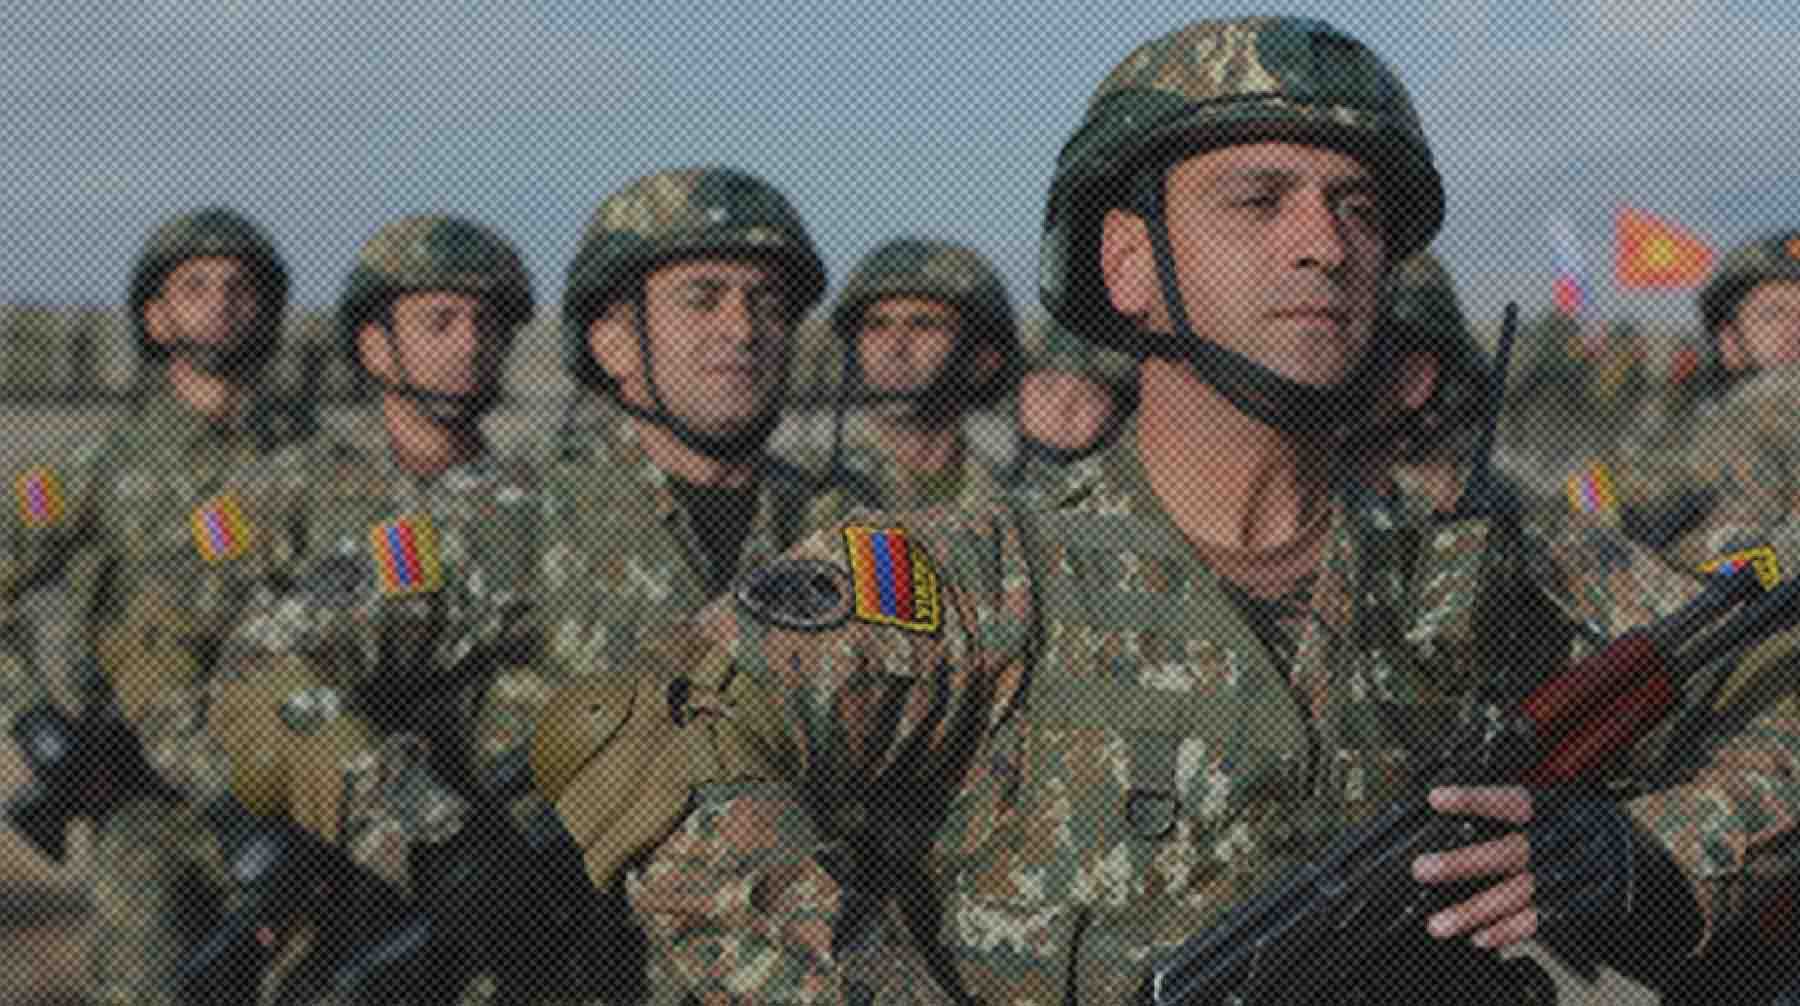 Dailystorm - Армения попросит помощи у России, ОДКБ и Совбеза ООН после ночного обострения ситуации на границе с Азербайджаном